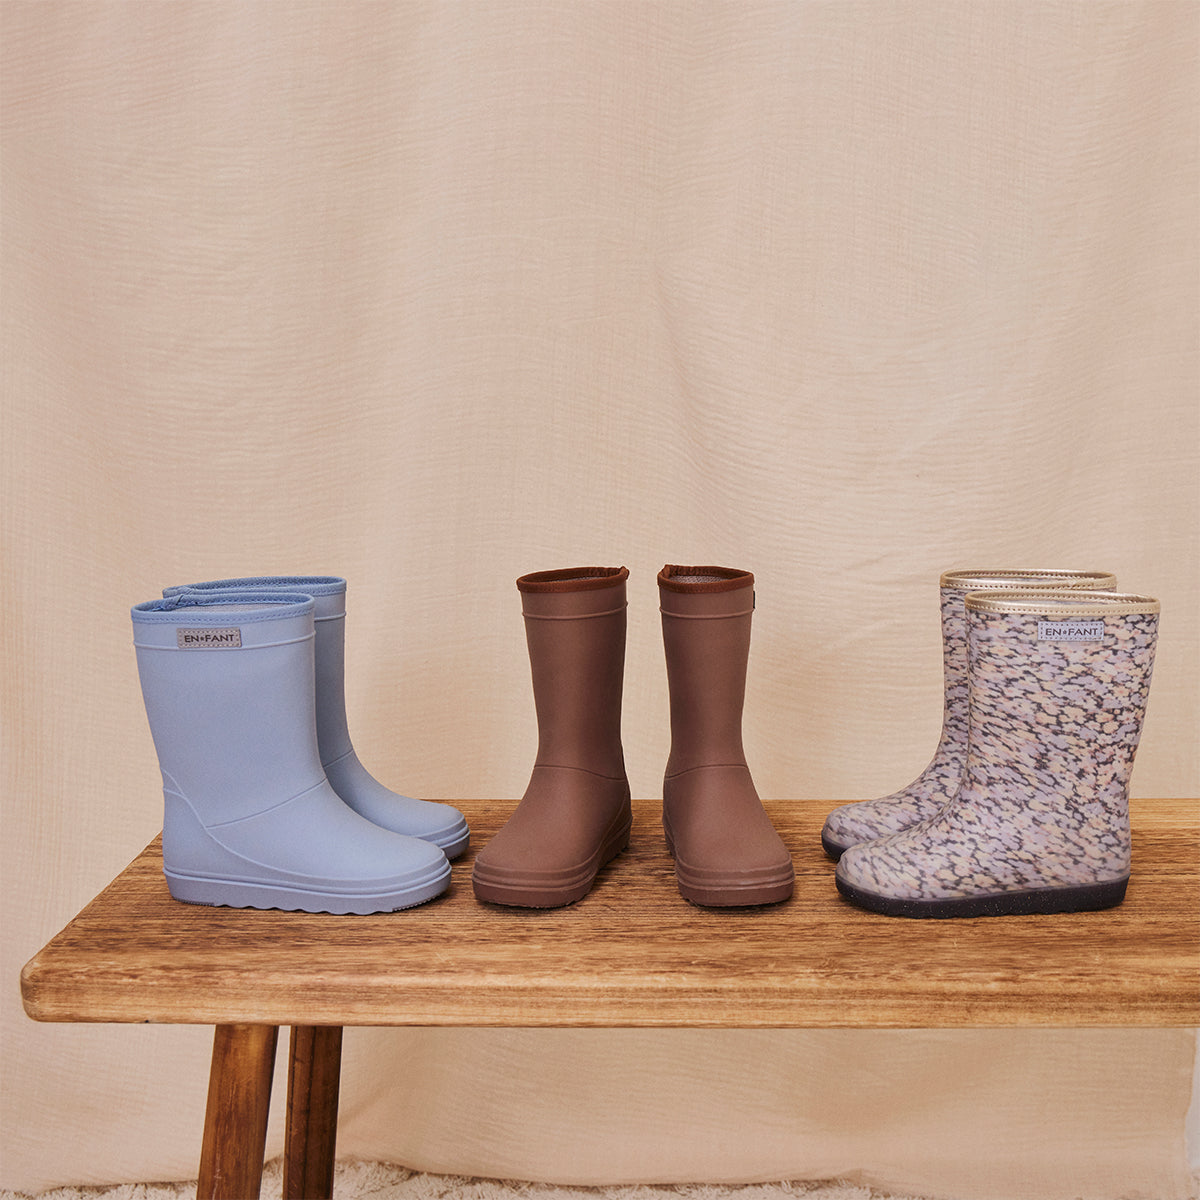 Dit zijn de regenlaarzen dusty blue van het bekende, populaire Deense merk En Fant. Deze laarzen zijn lichtblauw van kleur. De regenlaarzen zijn ongevoerd, wat ze perfect geschikt maakt voor op lentedagen. Met deze laarzen blijven de voeten van je kindje ook nog eens goed droog. 